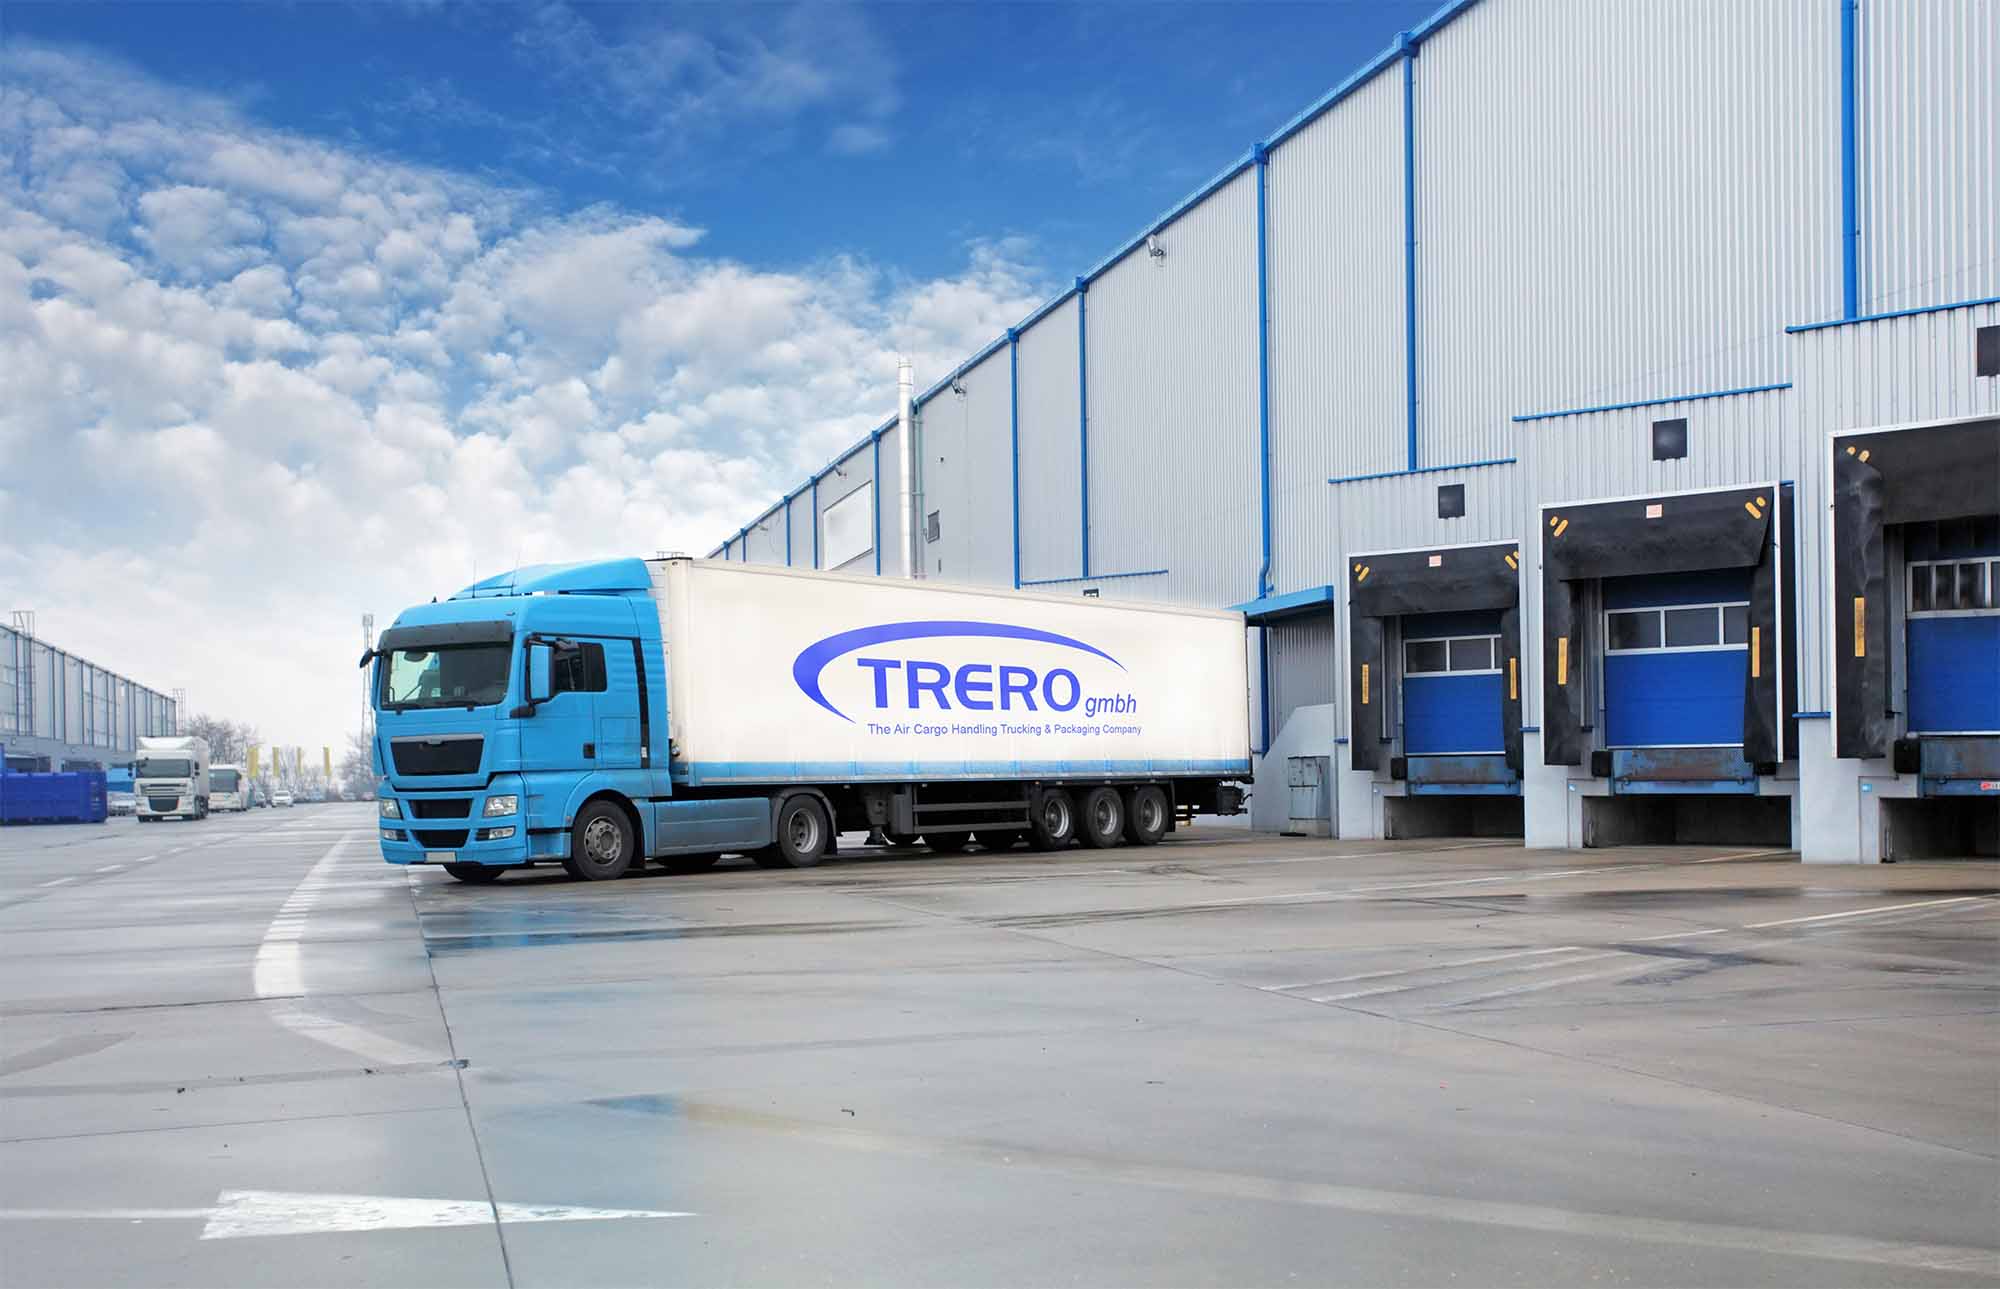 TRERO GmbH - Trucking LKW 2